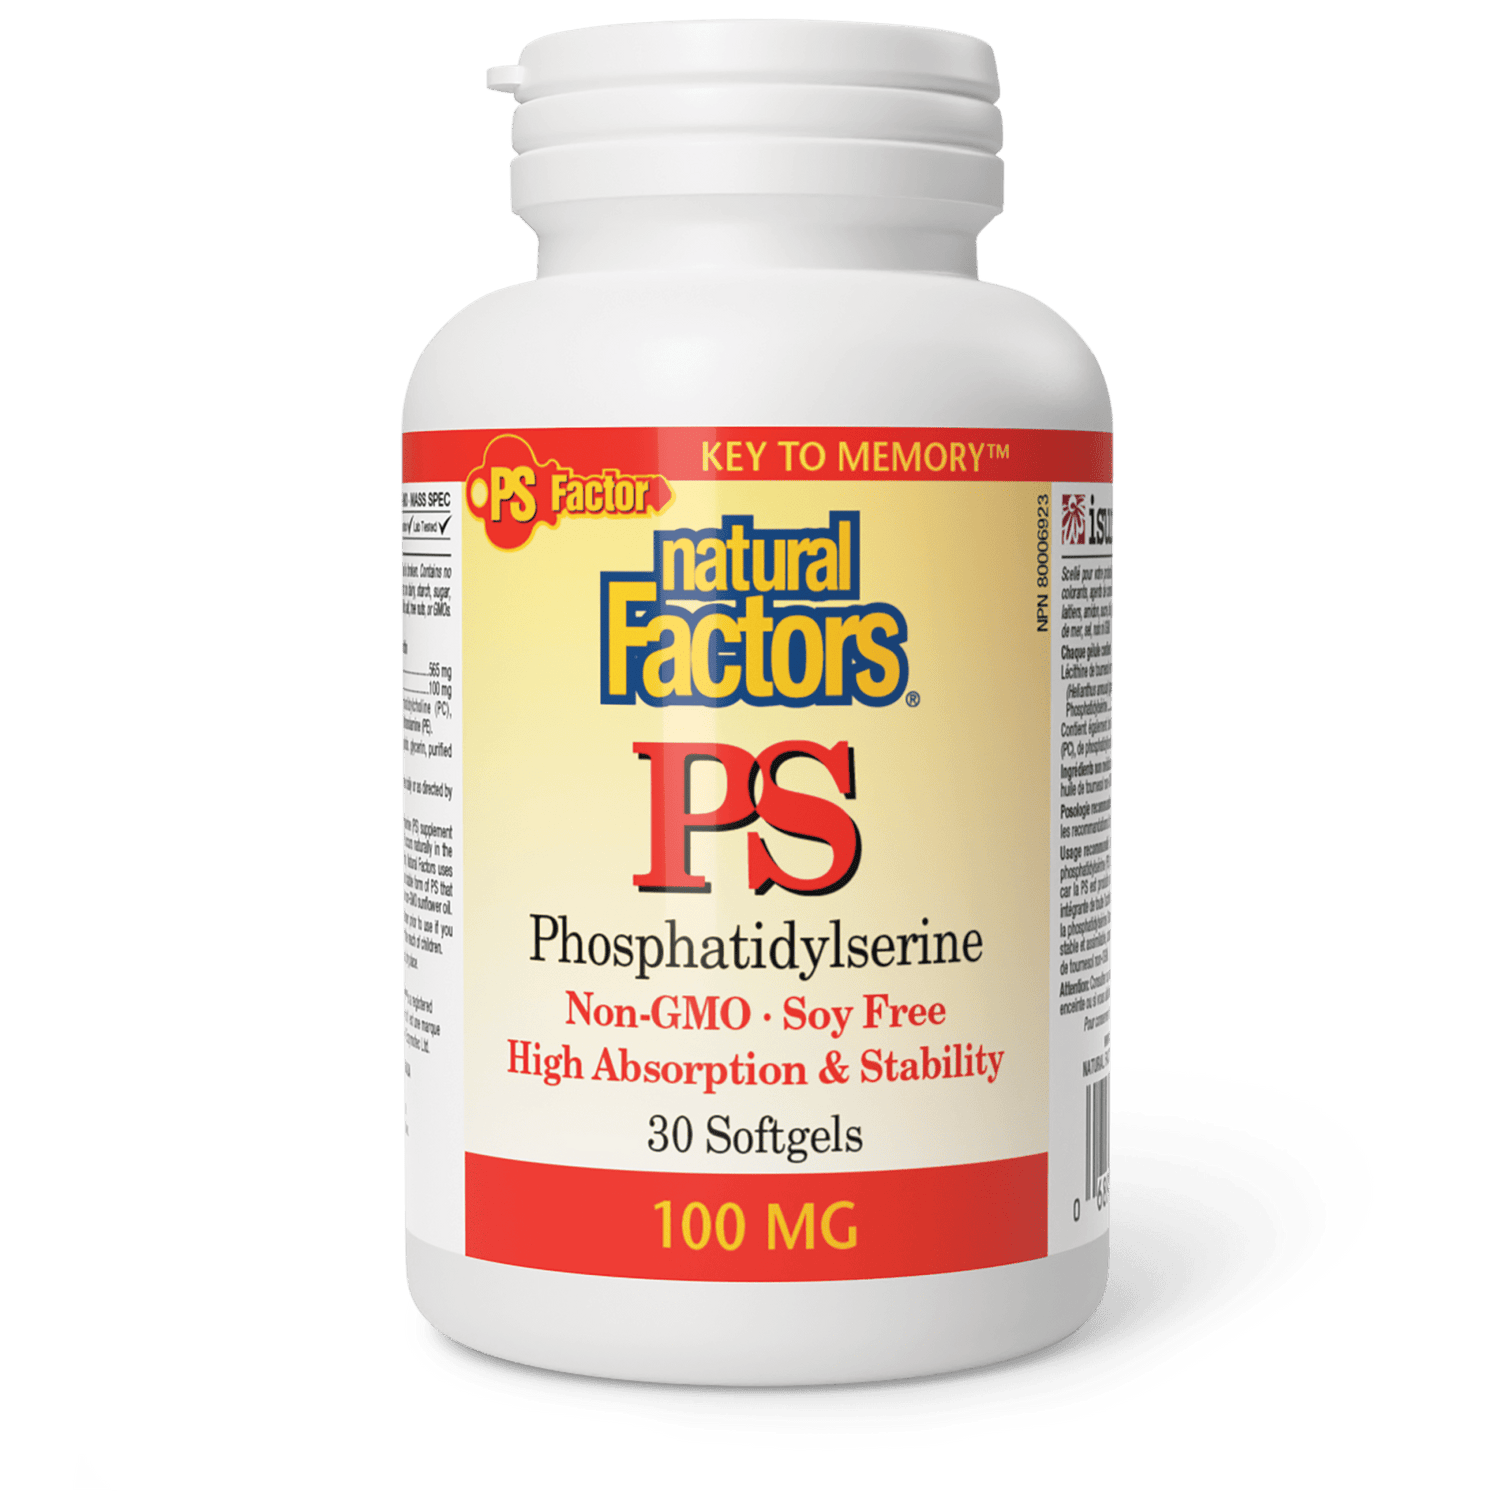 PS Phosphatidylserine 100 mg, Natural Factors|v|image|2612